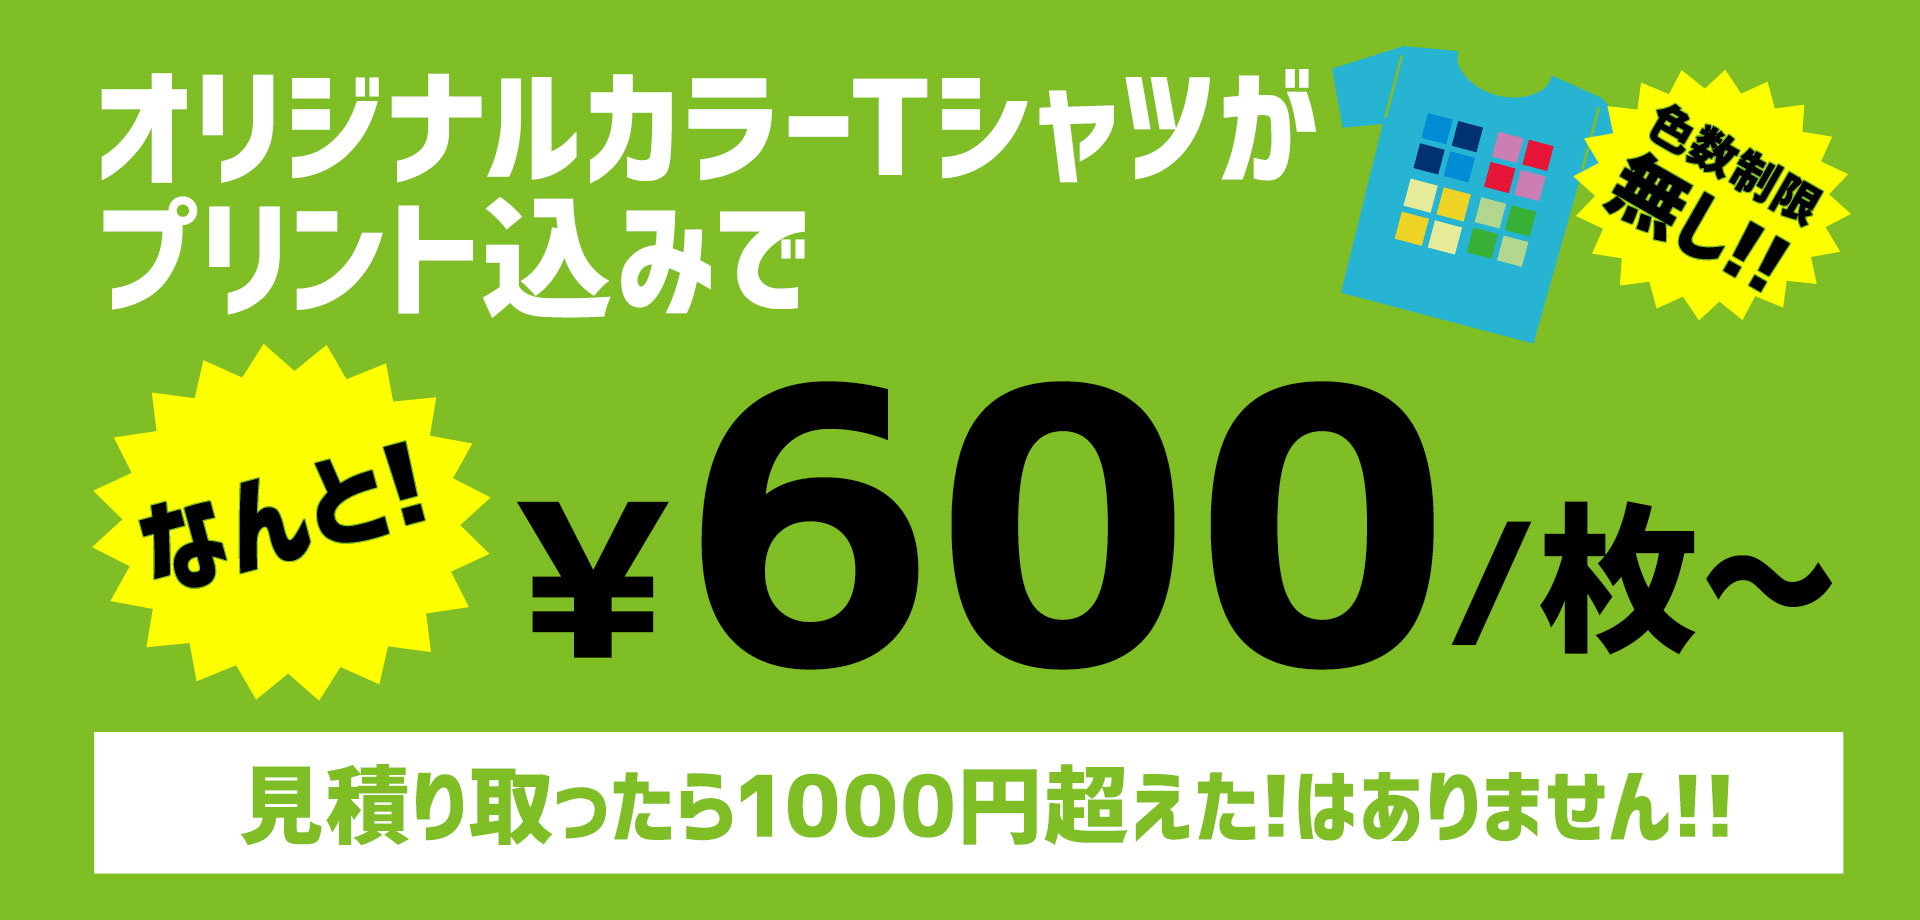 オリジナルカラーTシャツがプリント込みで600円〜/枚。見積もり取ったら1000円超えた！はありません